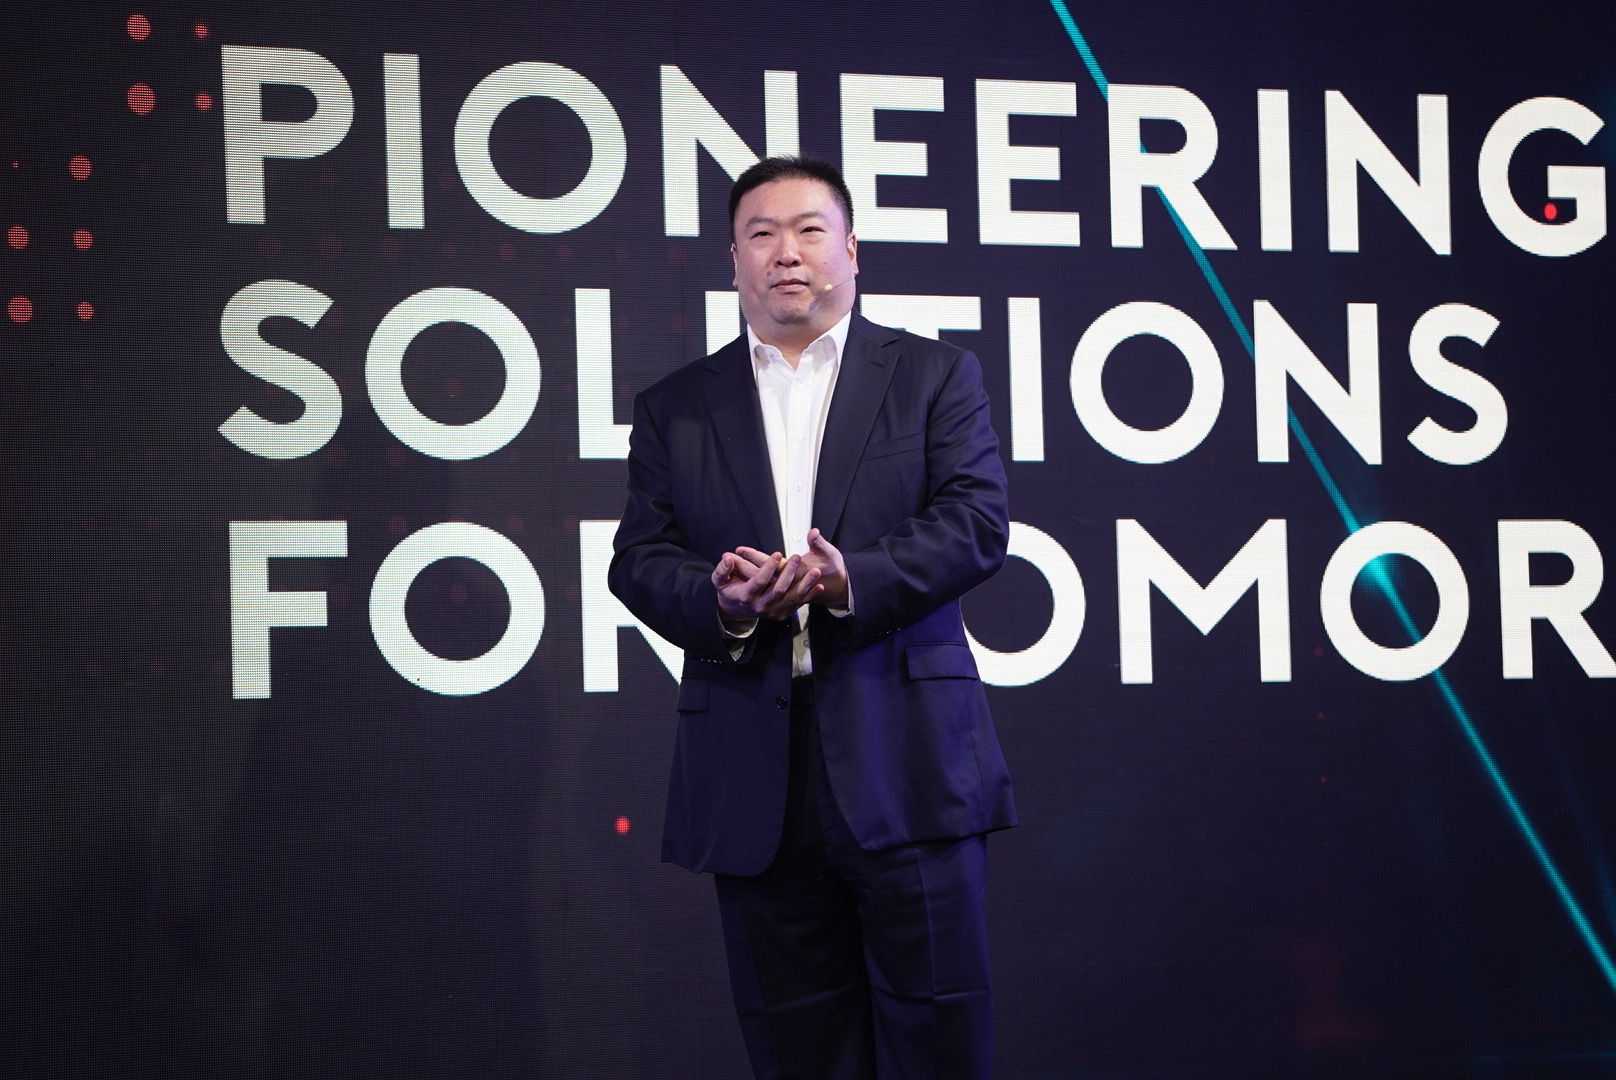 ​วีจีไอ ครบ 20 ปี เผยวิสัยทัศน์ “Pioneering Solutions for Tomorrow” ดันรายได้แตะ 10,000 ล้านใน 3 ปี